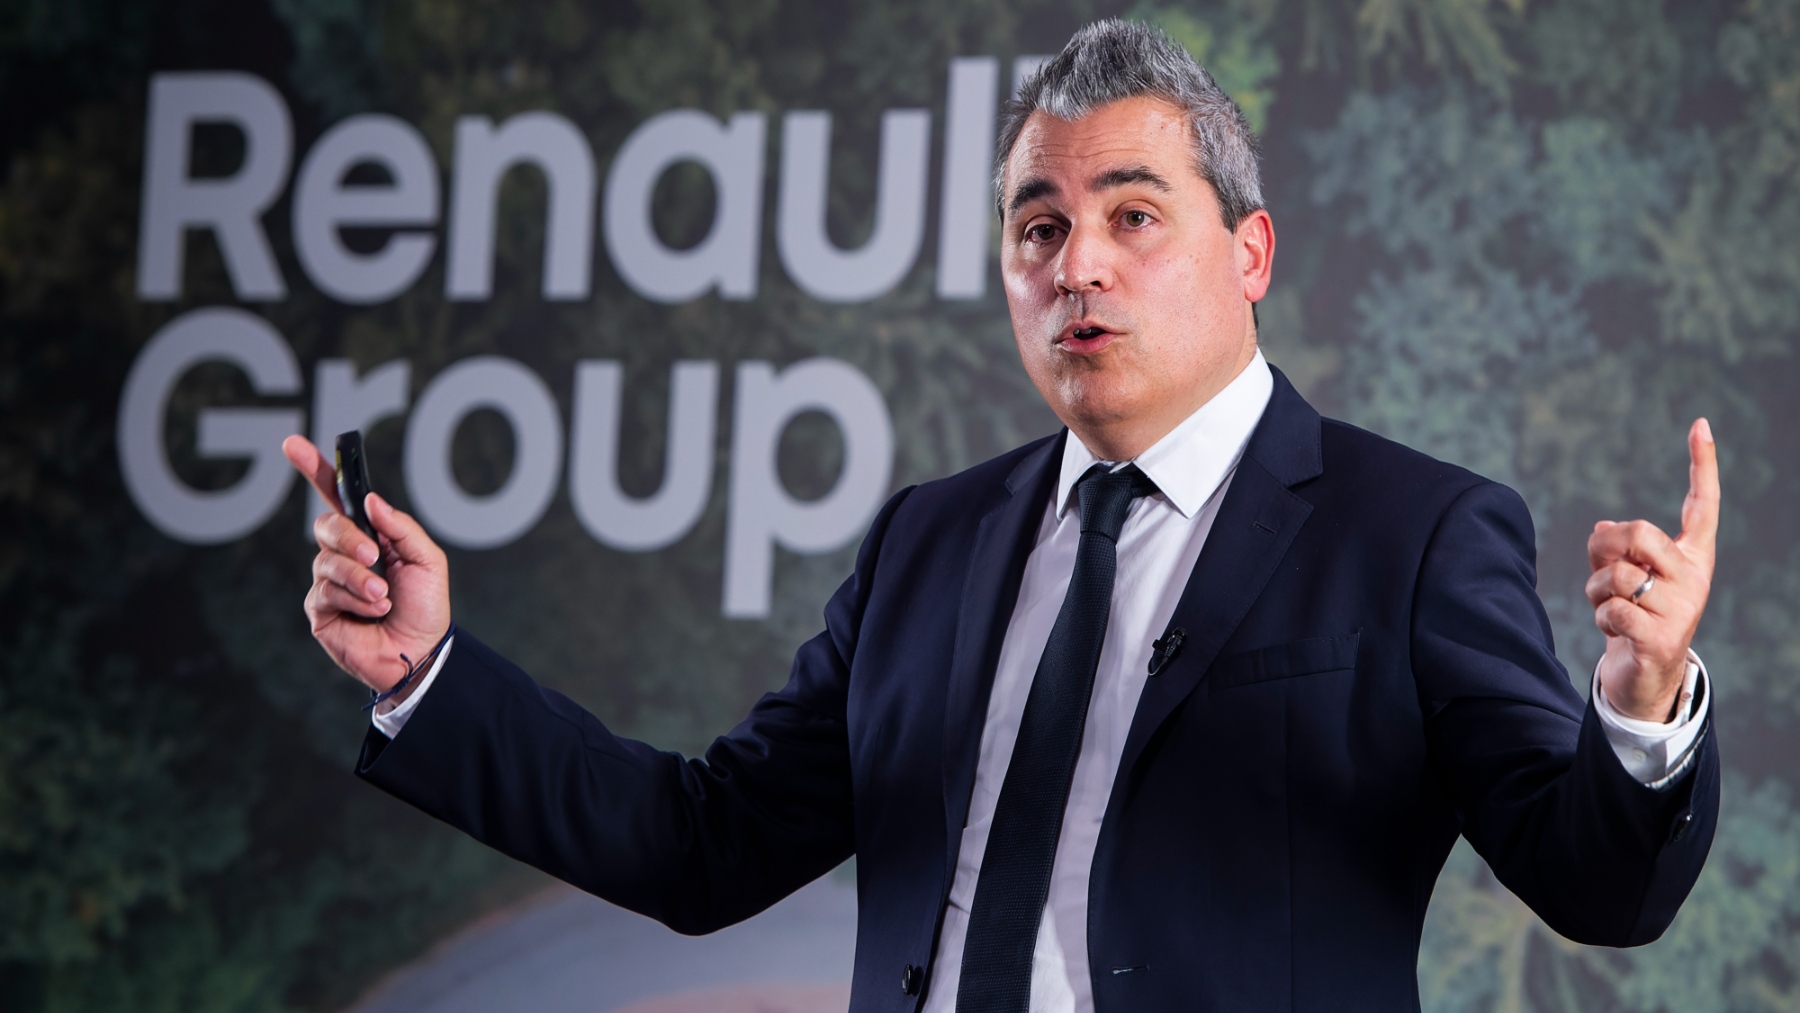 Josep María Recasens, director de Estrategia de Renault Group y presidente director general de Renault Group Iberia durante el encuentro